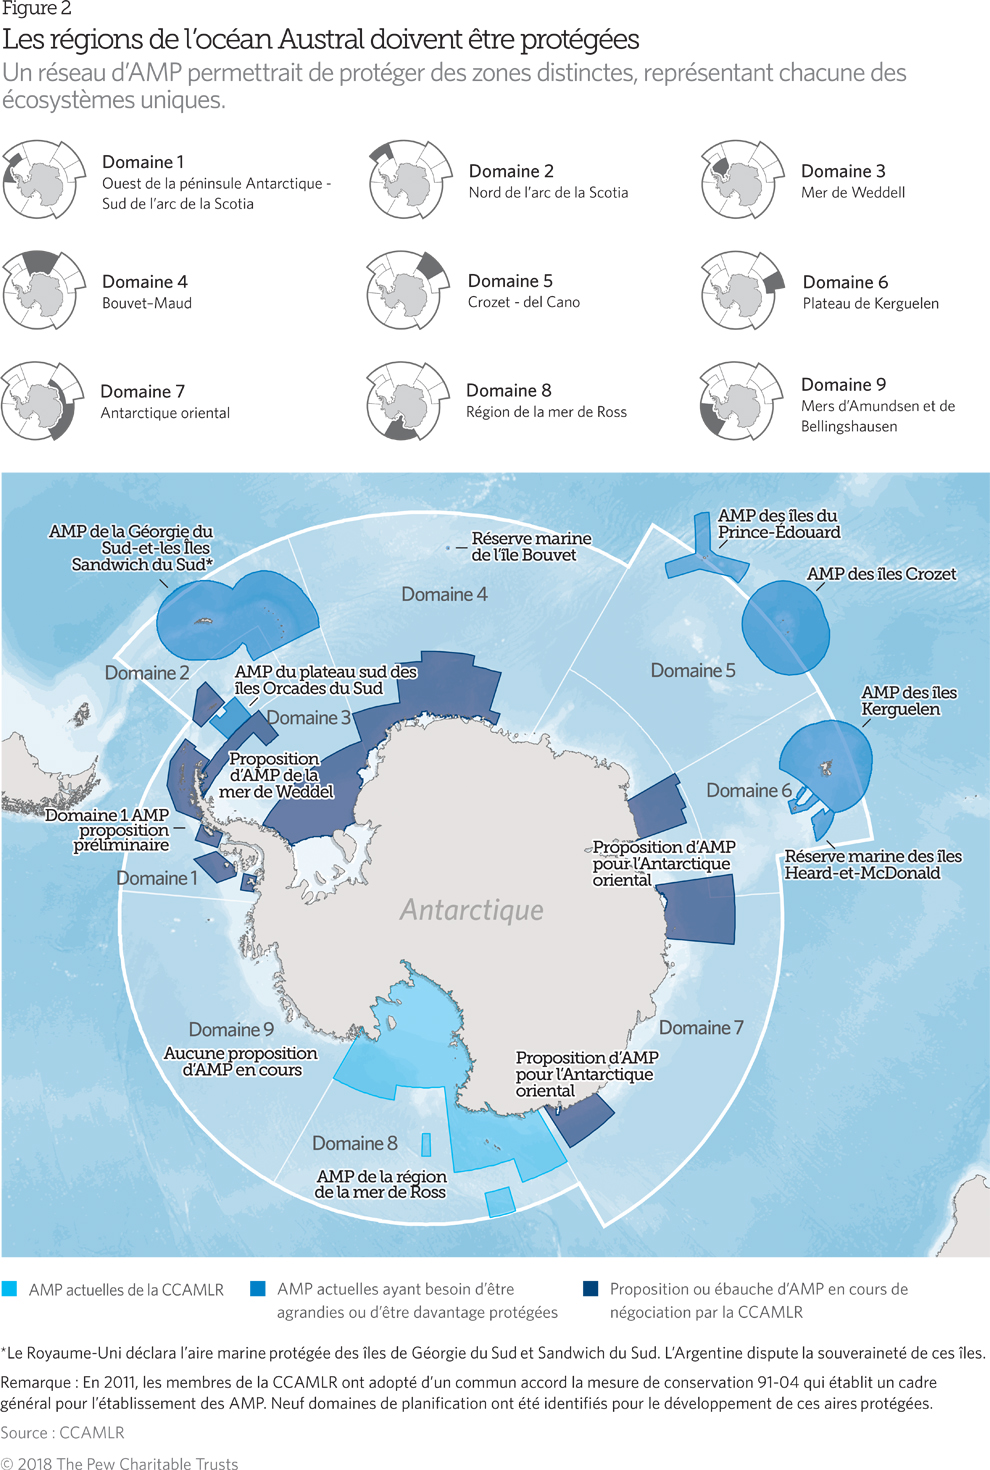 Un réseau d’aires marines protégées dans l’océan Austral | The Pew ...